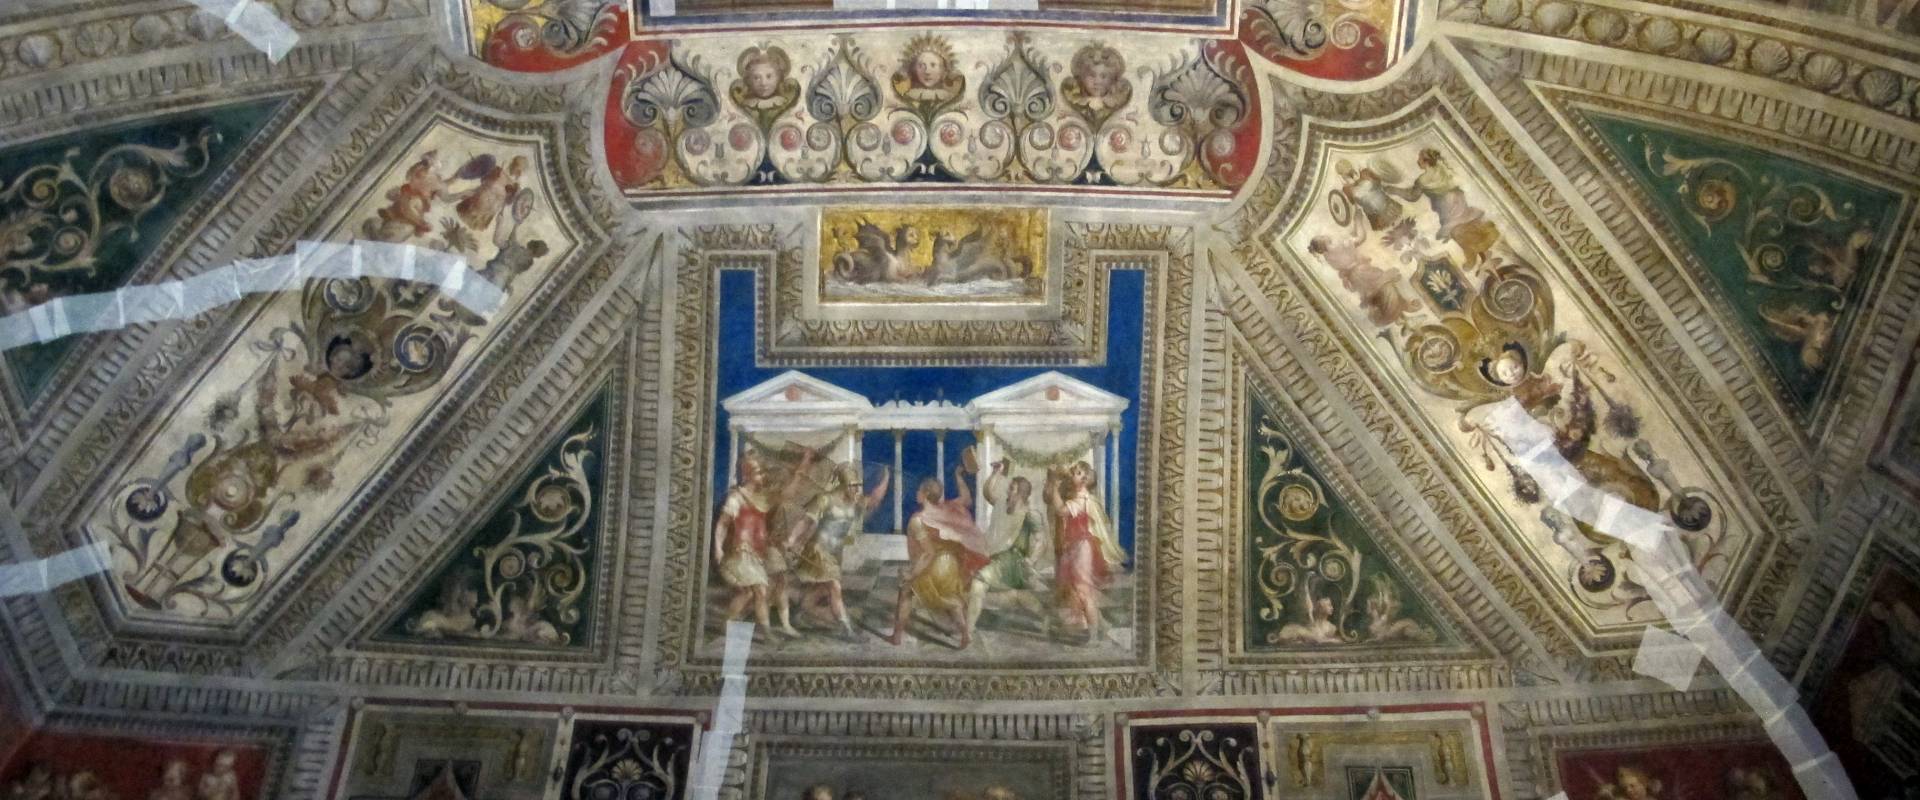 Castello estense di ferrara, int., saletta dei giochi, affreschi di bastianino e ludovico settevecchi (post 1570) 06 photo by Sailko